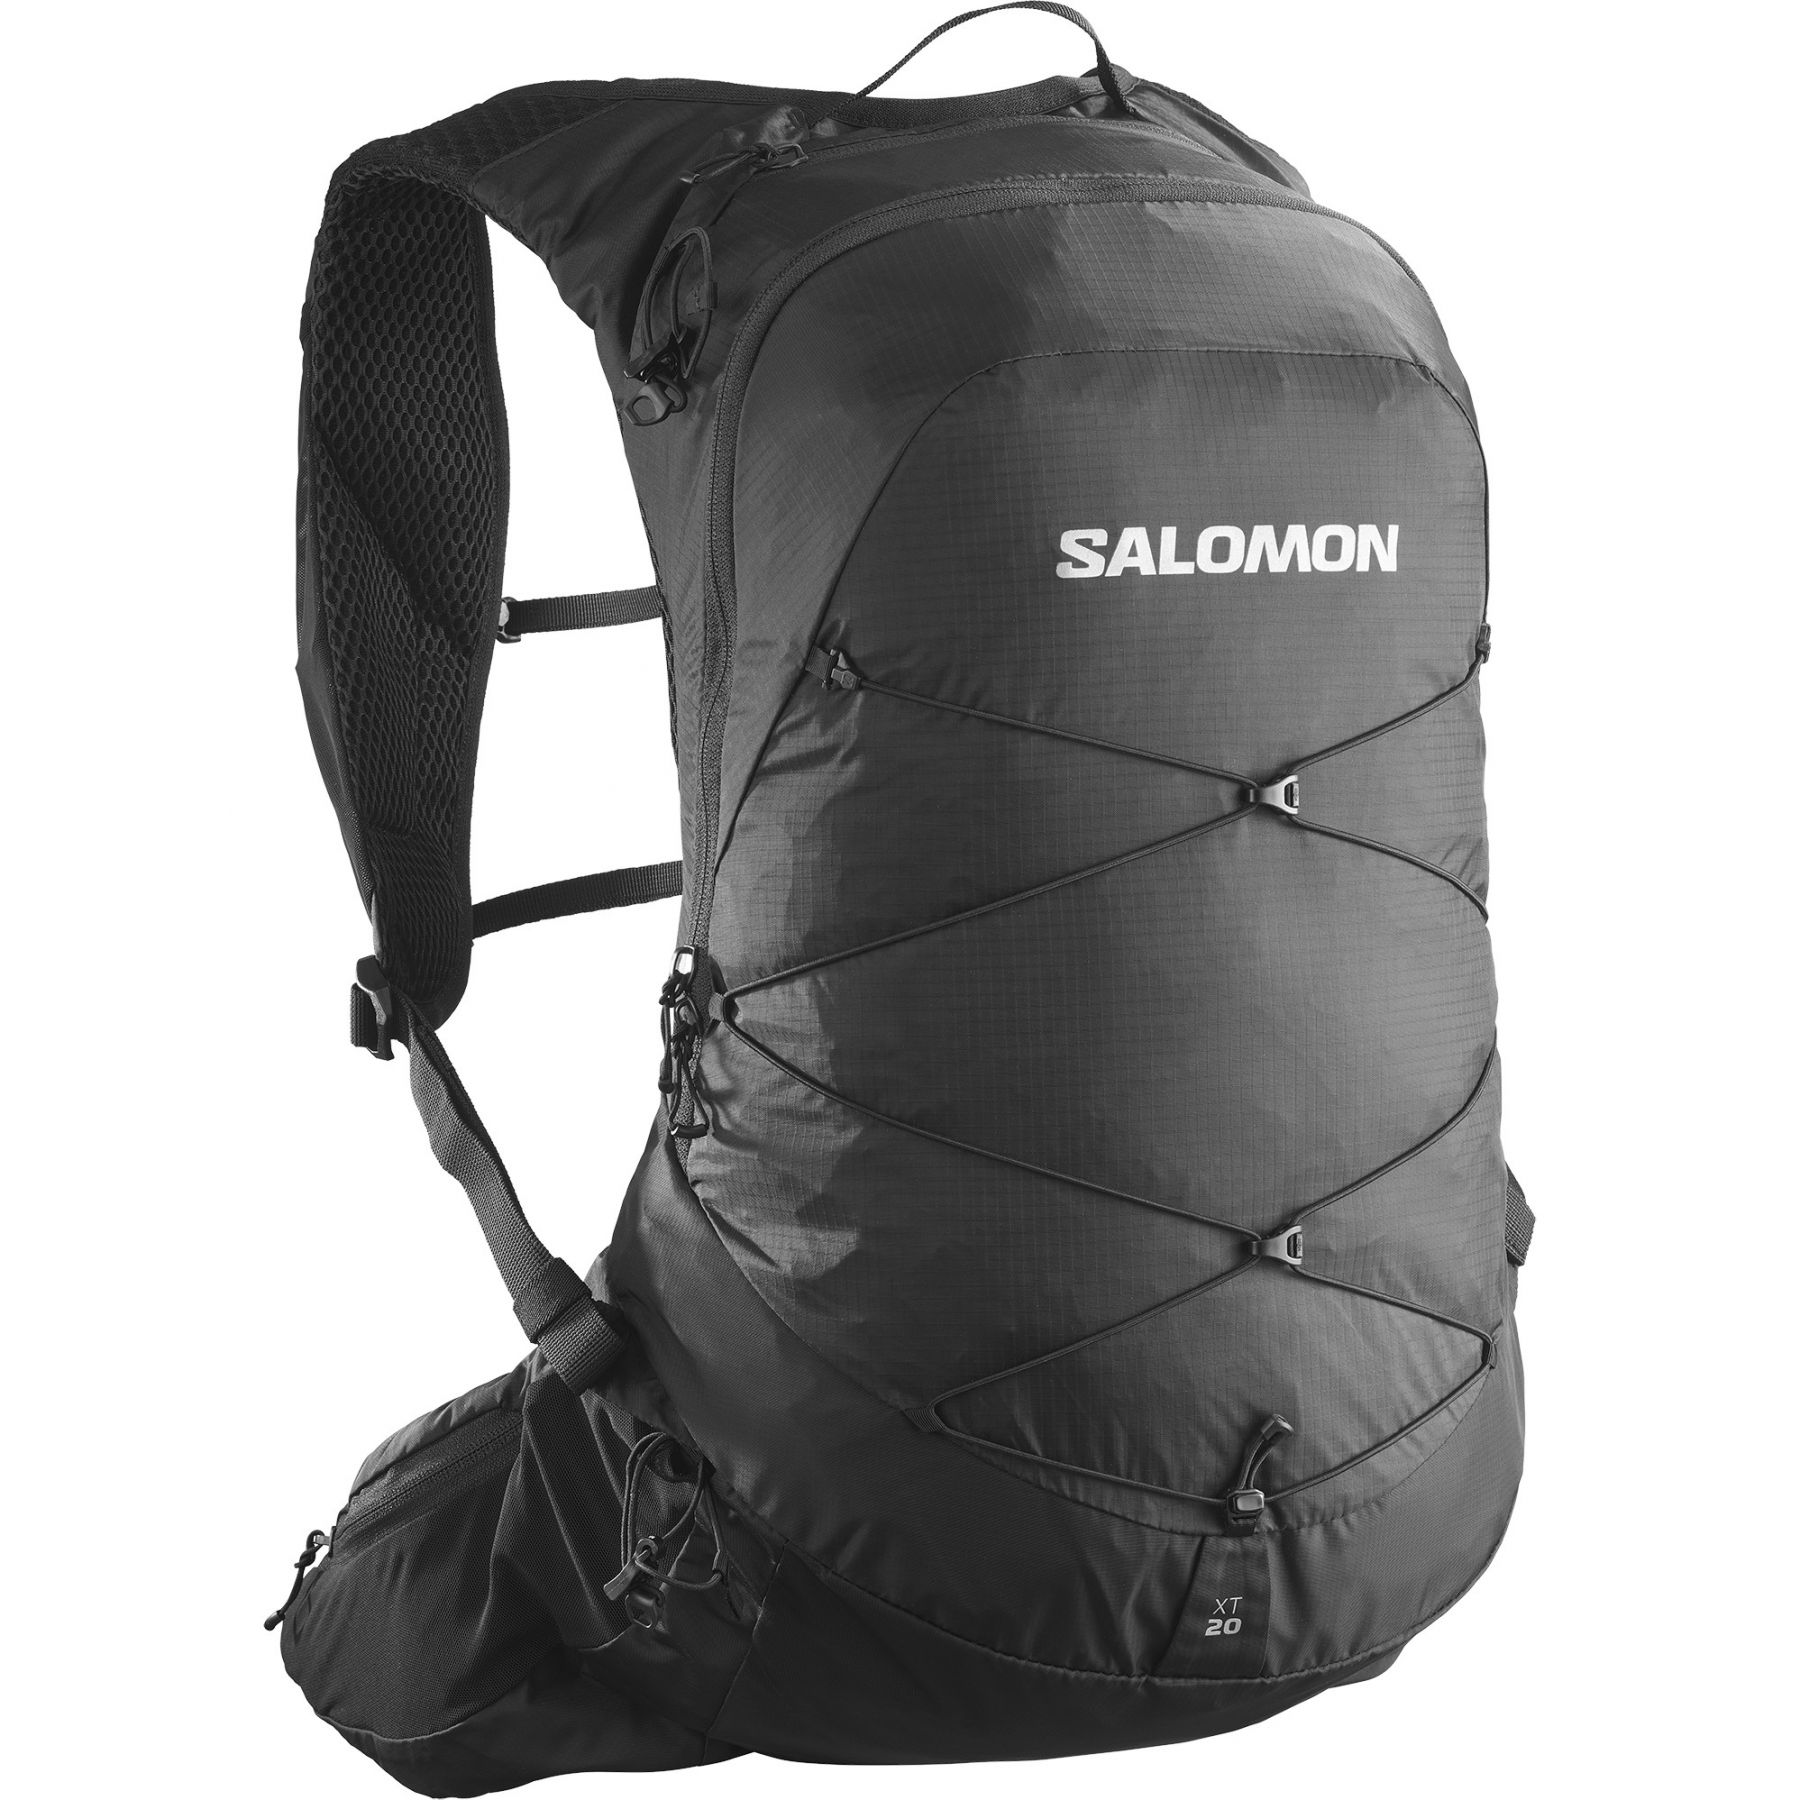 Se Salomon XT 20, rygsæk, sort hos AktivVinter.dk